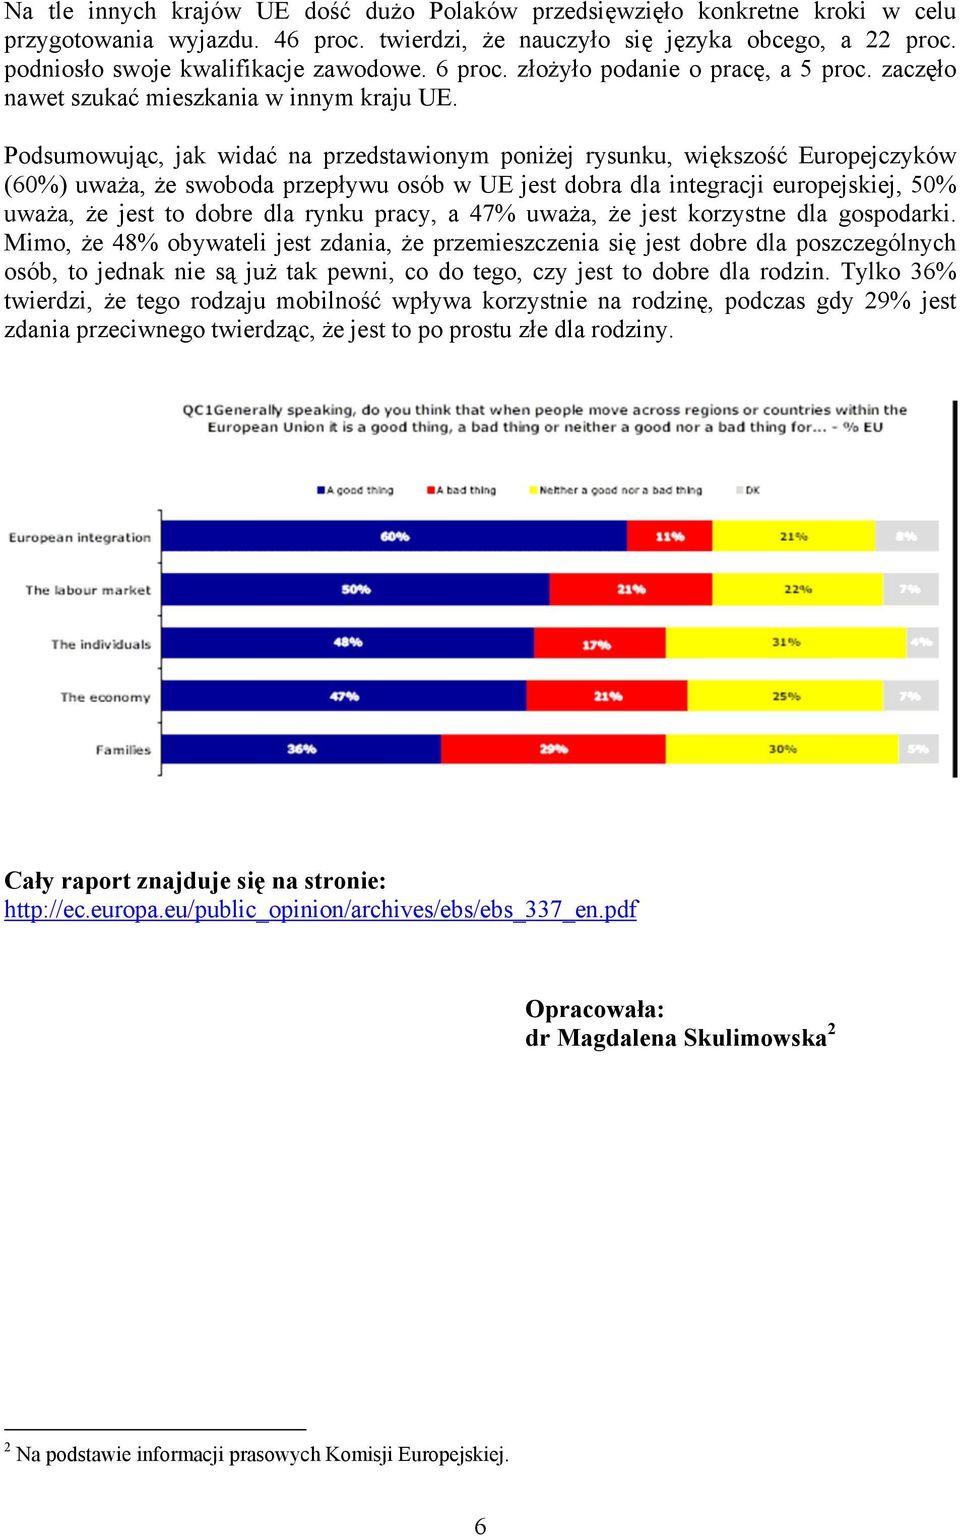 Podsumowując, jak widać na przedstawionym poniżej rysunku, większość Europejczyków (60%) uważa, że swoboda przepływu osób w UE jest dobra dla integracji europejskiej, 50% uważa, że jest to dobre dla